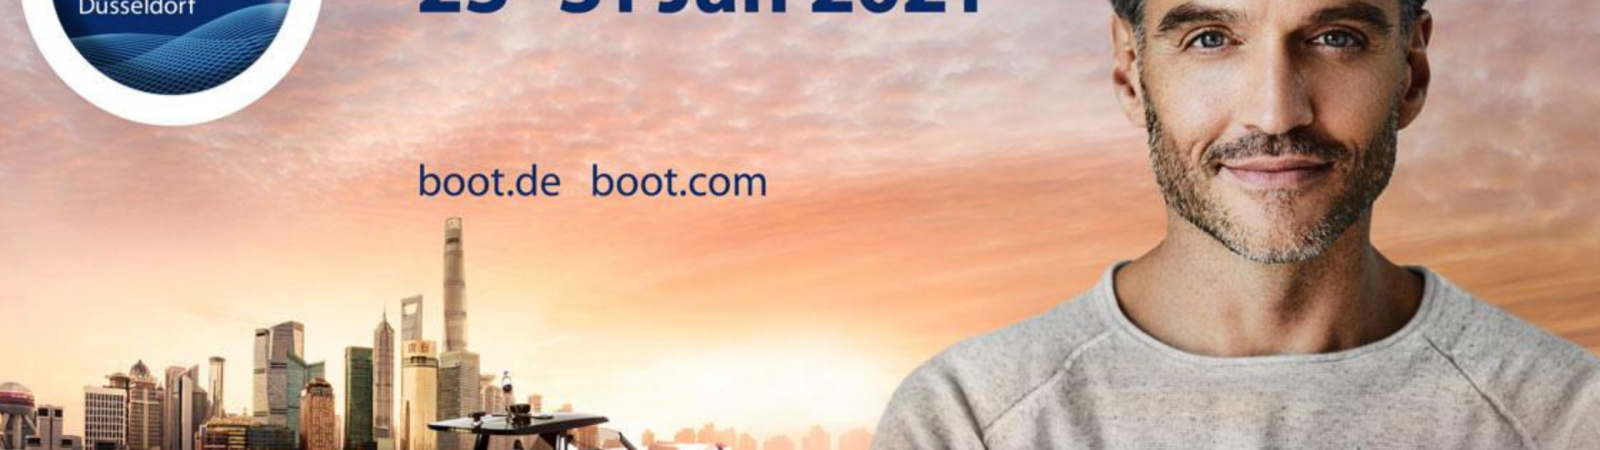 Boot Düsseldorf 2021- Rendez-vous au salon mondial n°1 de la plaisance du 23 au 31 janvier